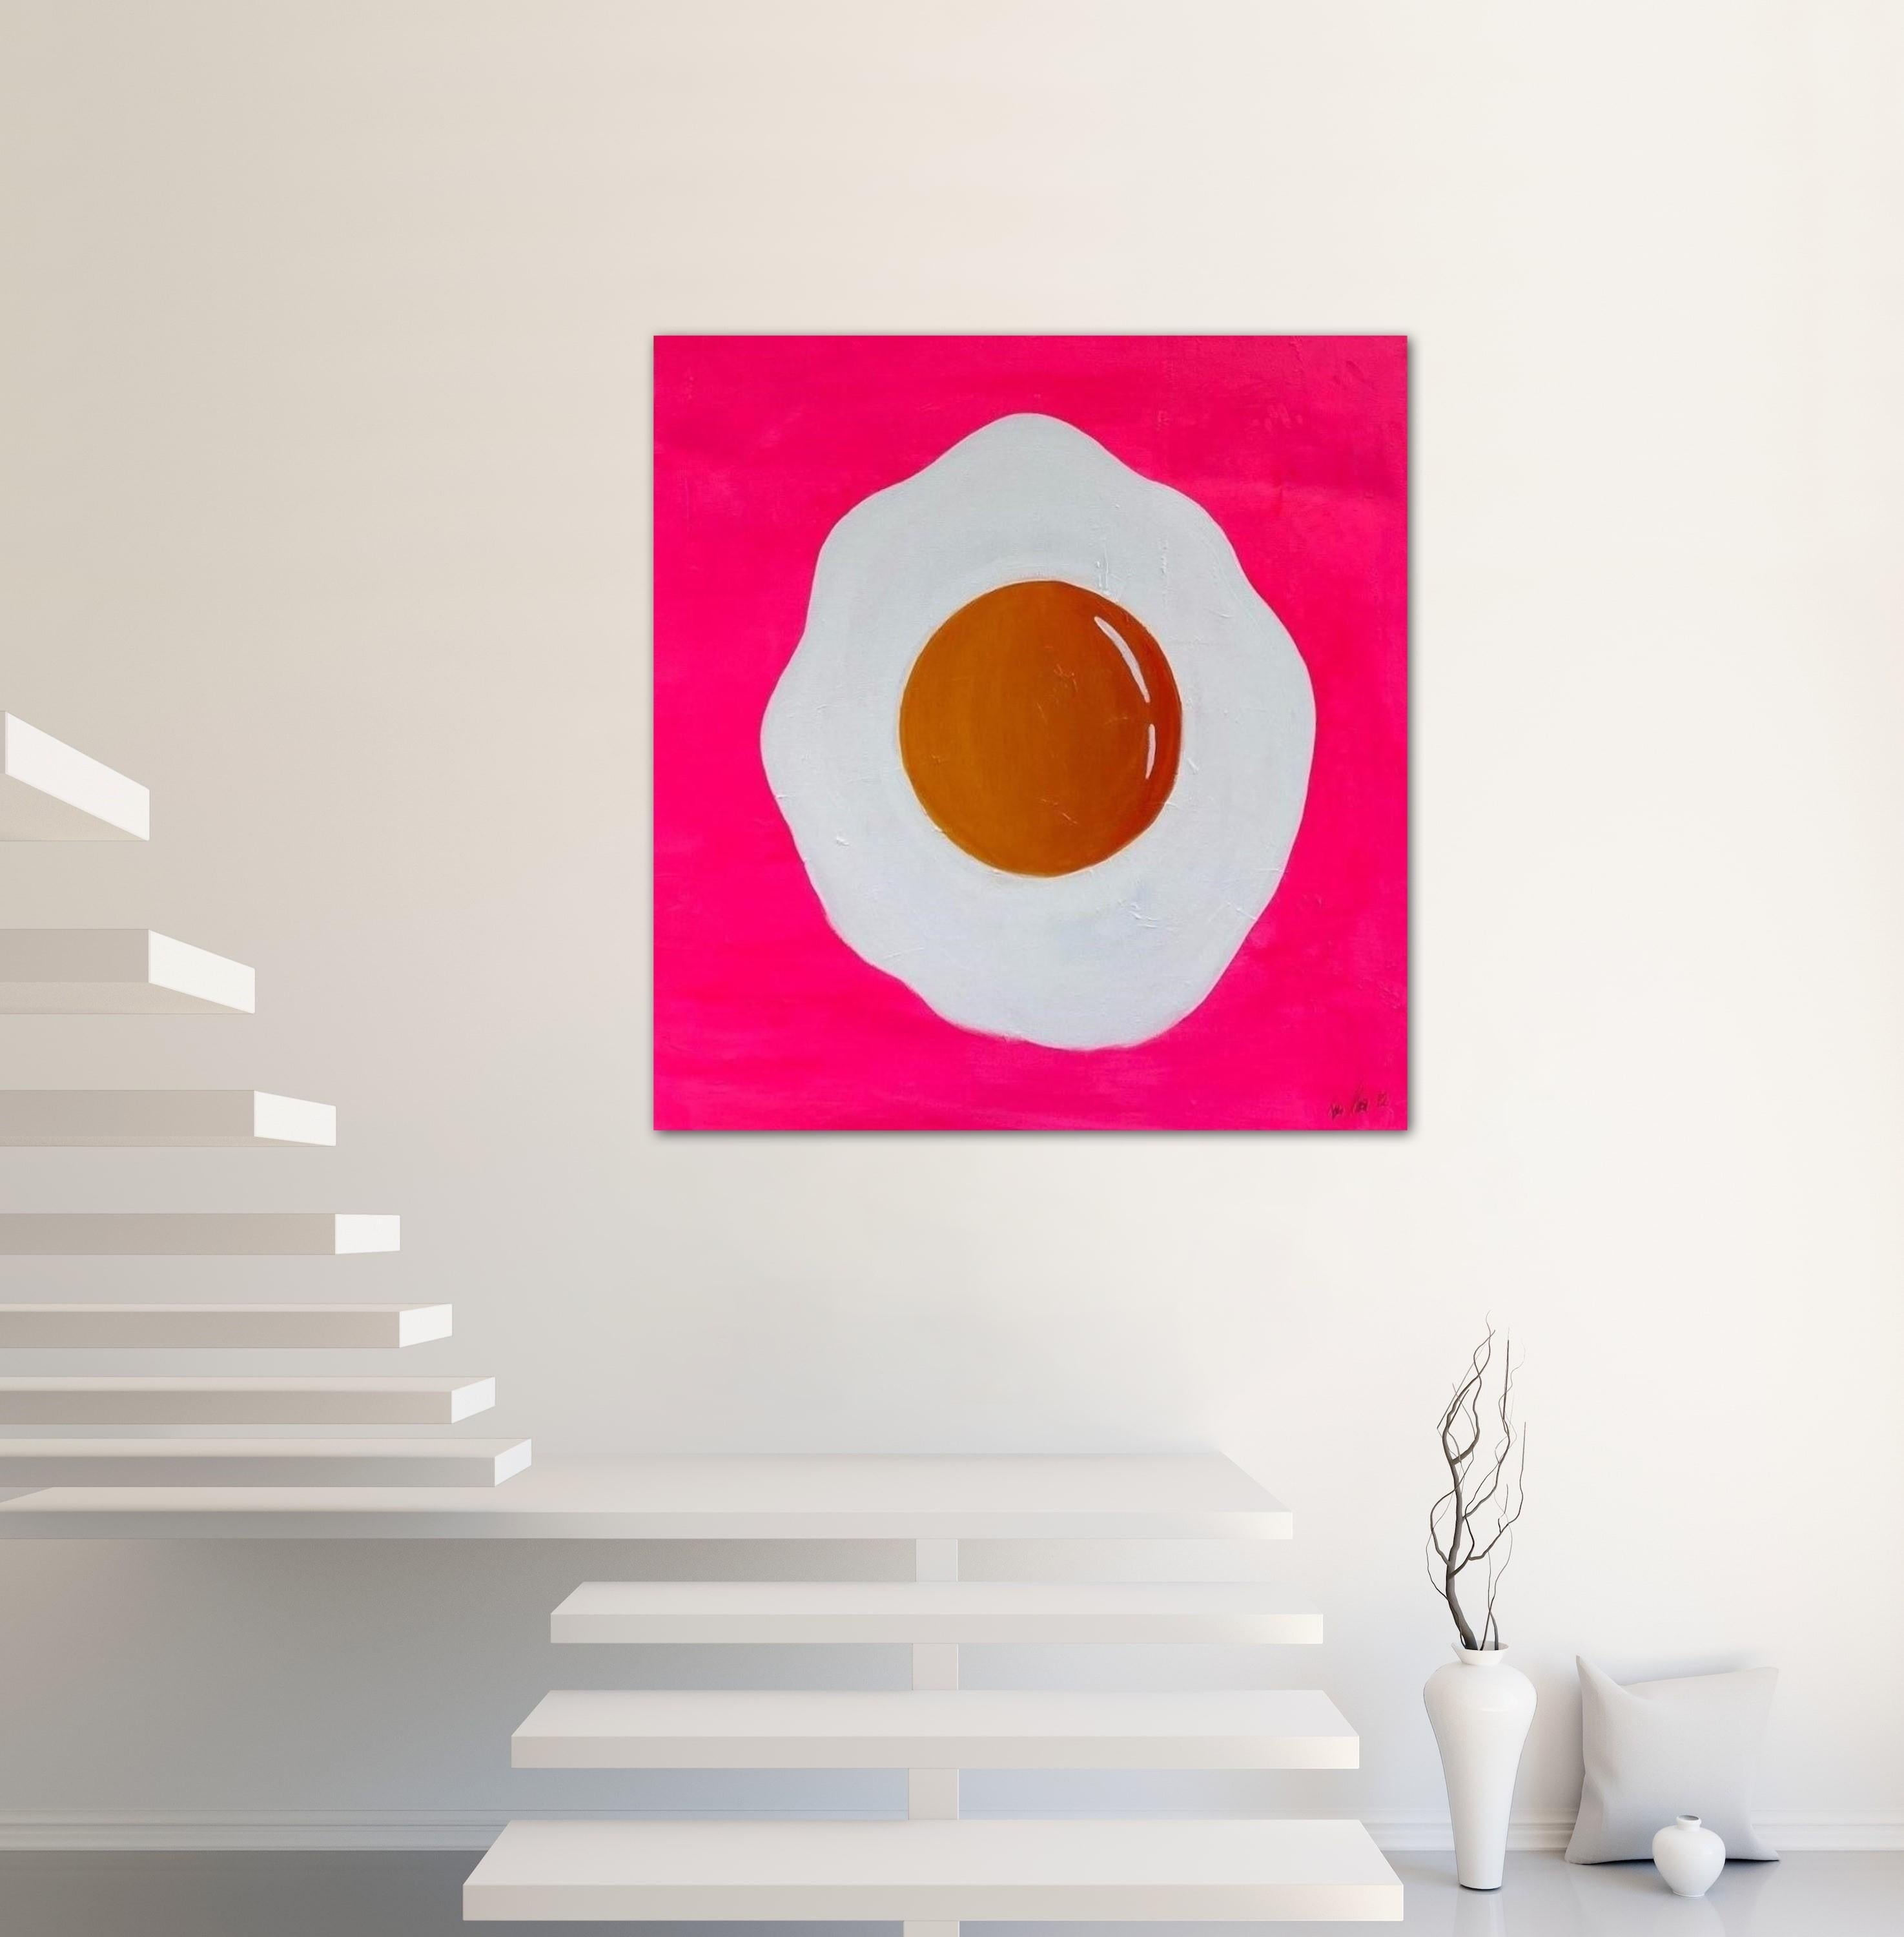 Fried Egg Acrylique sur toile par l'artiste peintre Tone Murr . Modern pop contemporary Wall Art . Couleurs vives Rose Blanc et Jaune Acrylique originale sur toile . Peinture à la main d'un design moderniste minimal et d'une grande peinture